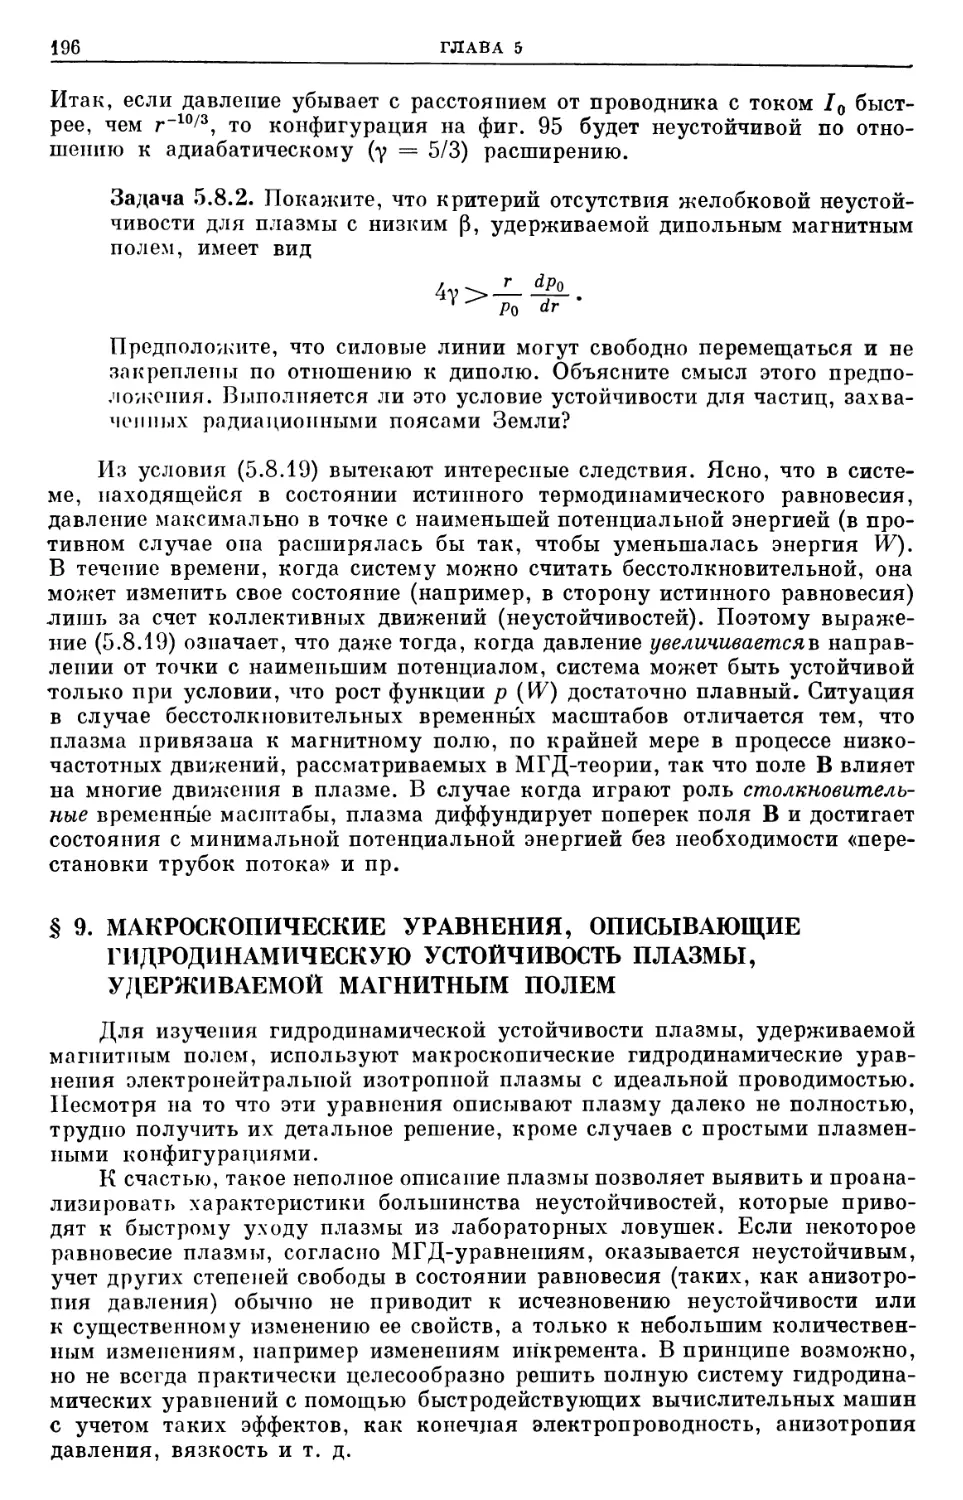 § 9. Макроскопические уравнения, описывающие гидродинамическую устойчивость плазмы, удерживаемой магнитным полем